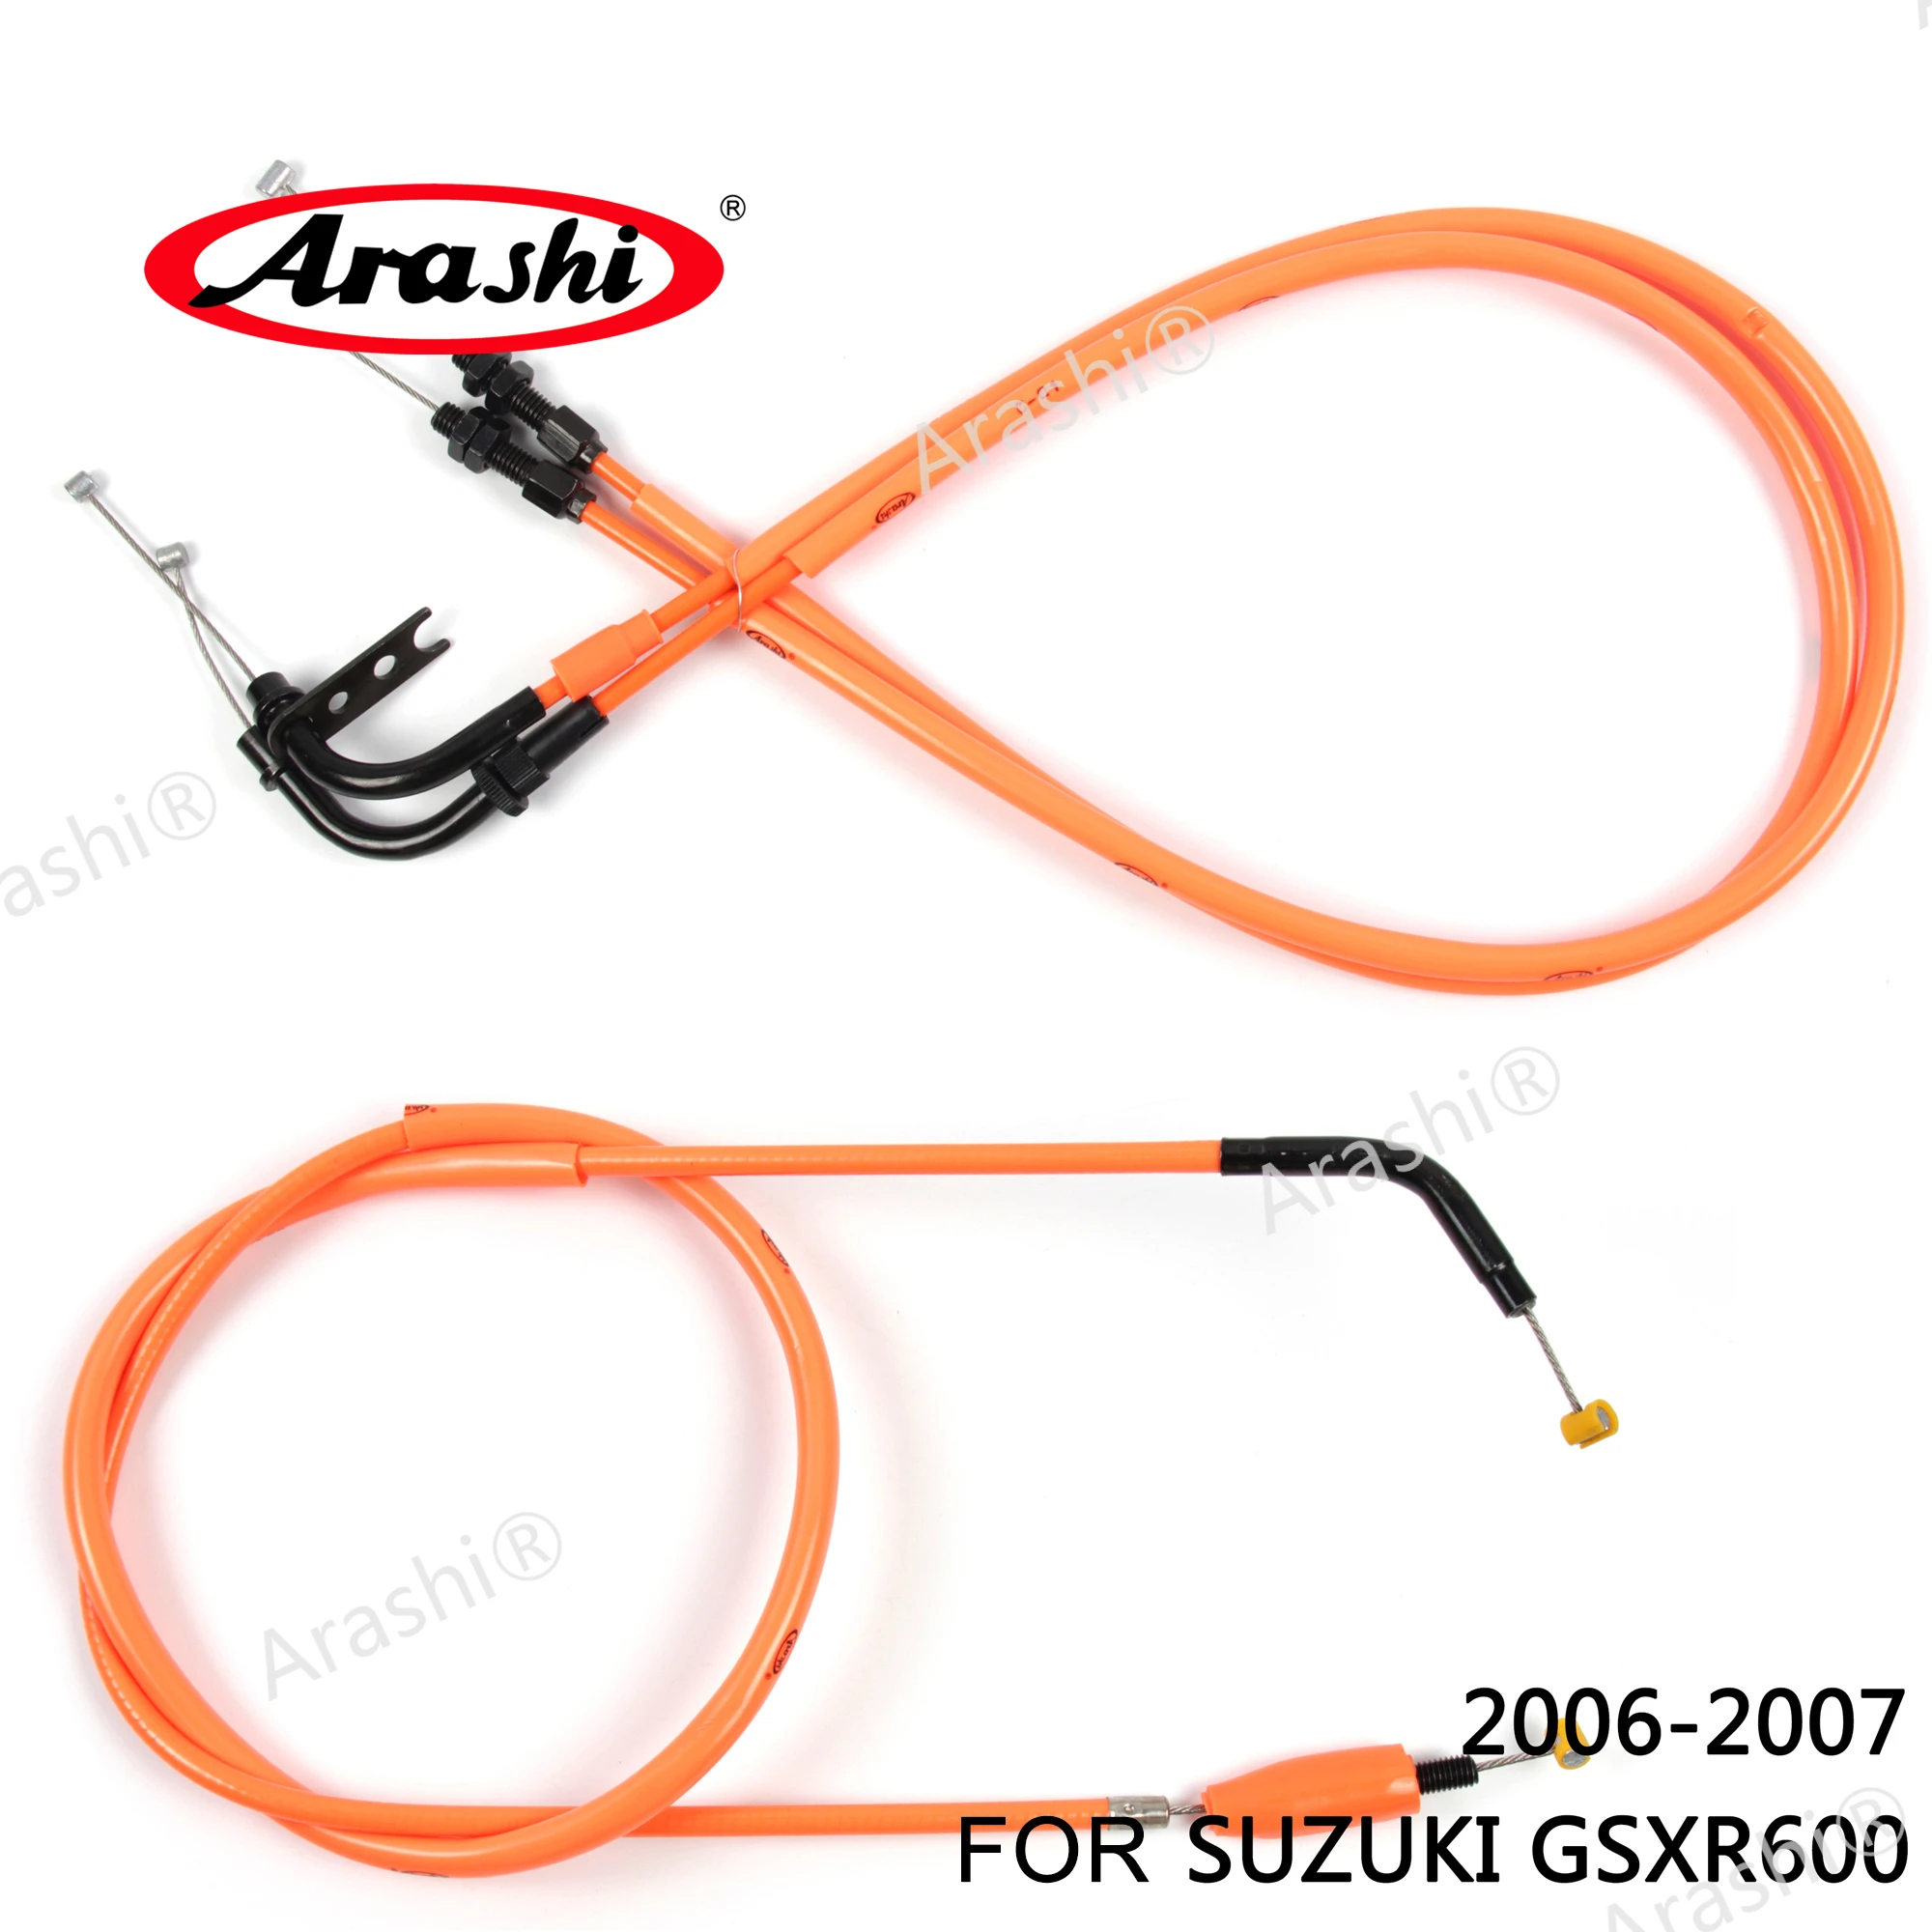 Arashi-Cables de acelerador y embrague para motocicleta, Cables de línea inoxidable para SUZUKI GSXR600 2006 2007 GSXR 600 GSX-R, 1 Juego